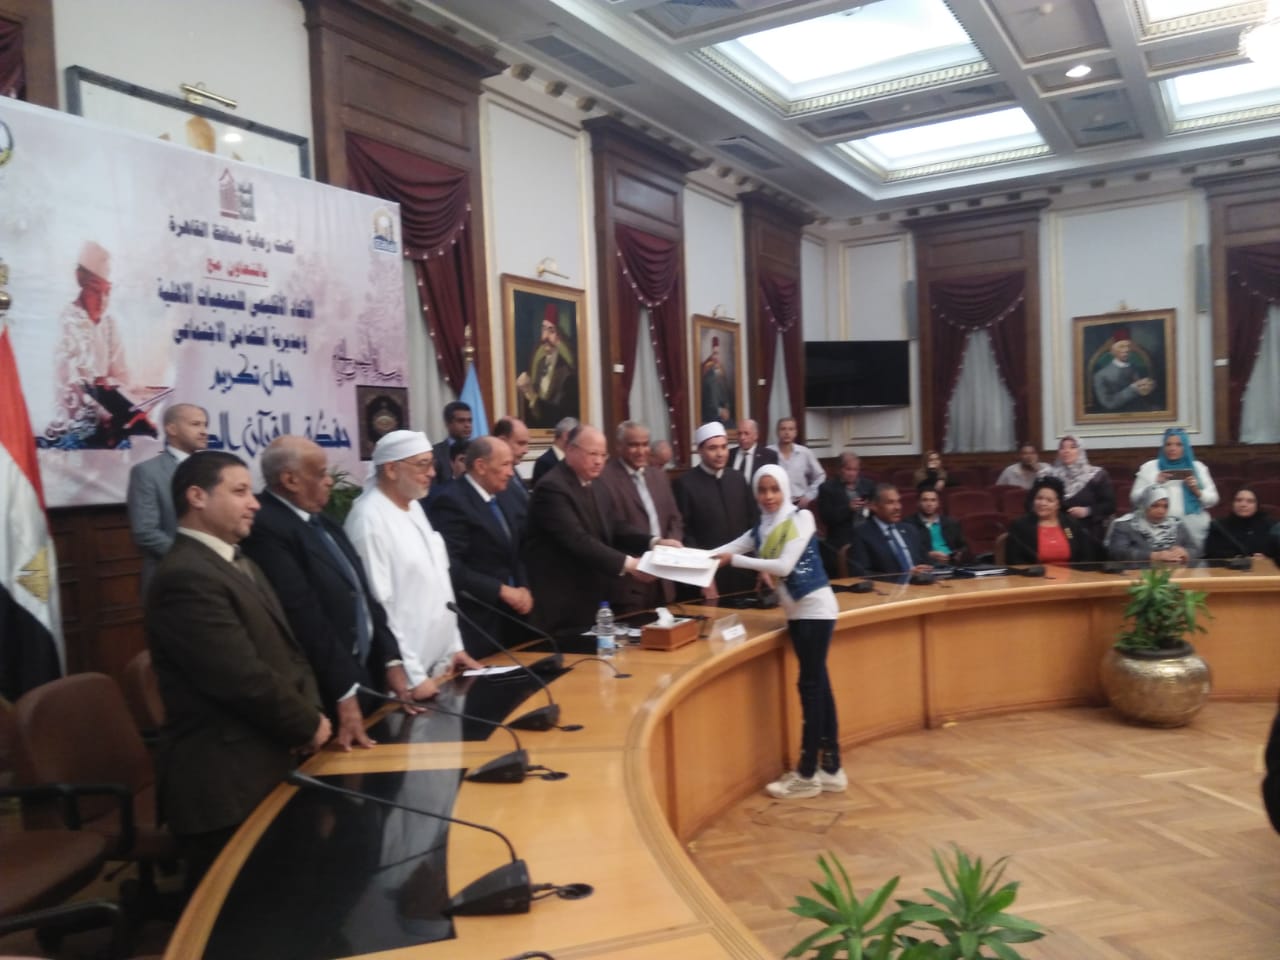 تكريم اوائل المسابقة الدينية بالقاهرة (2)